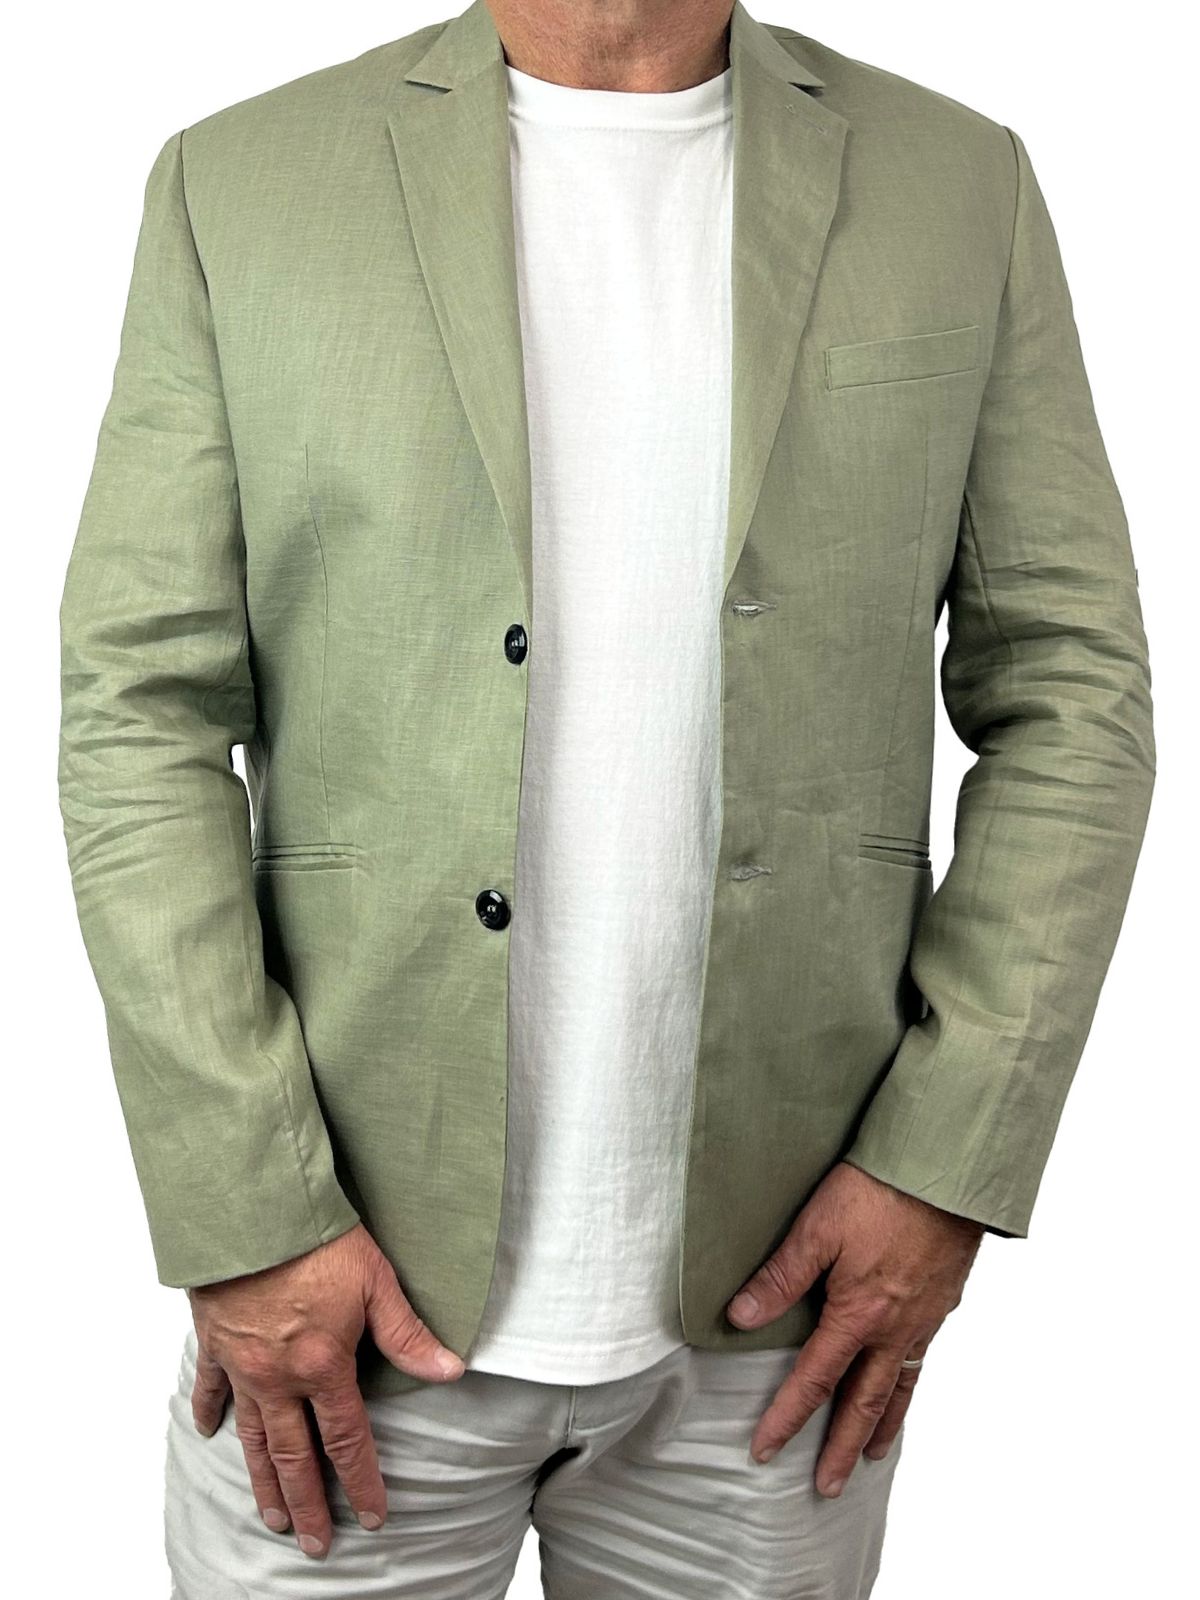 Sage Linen Jacket